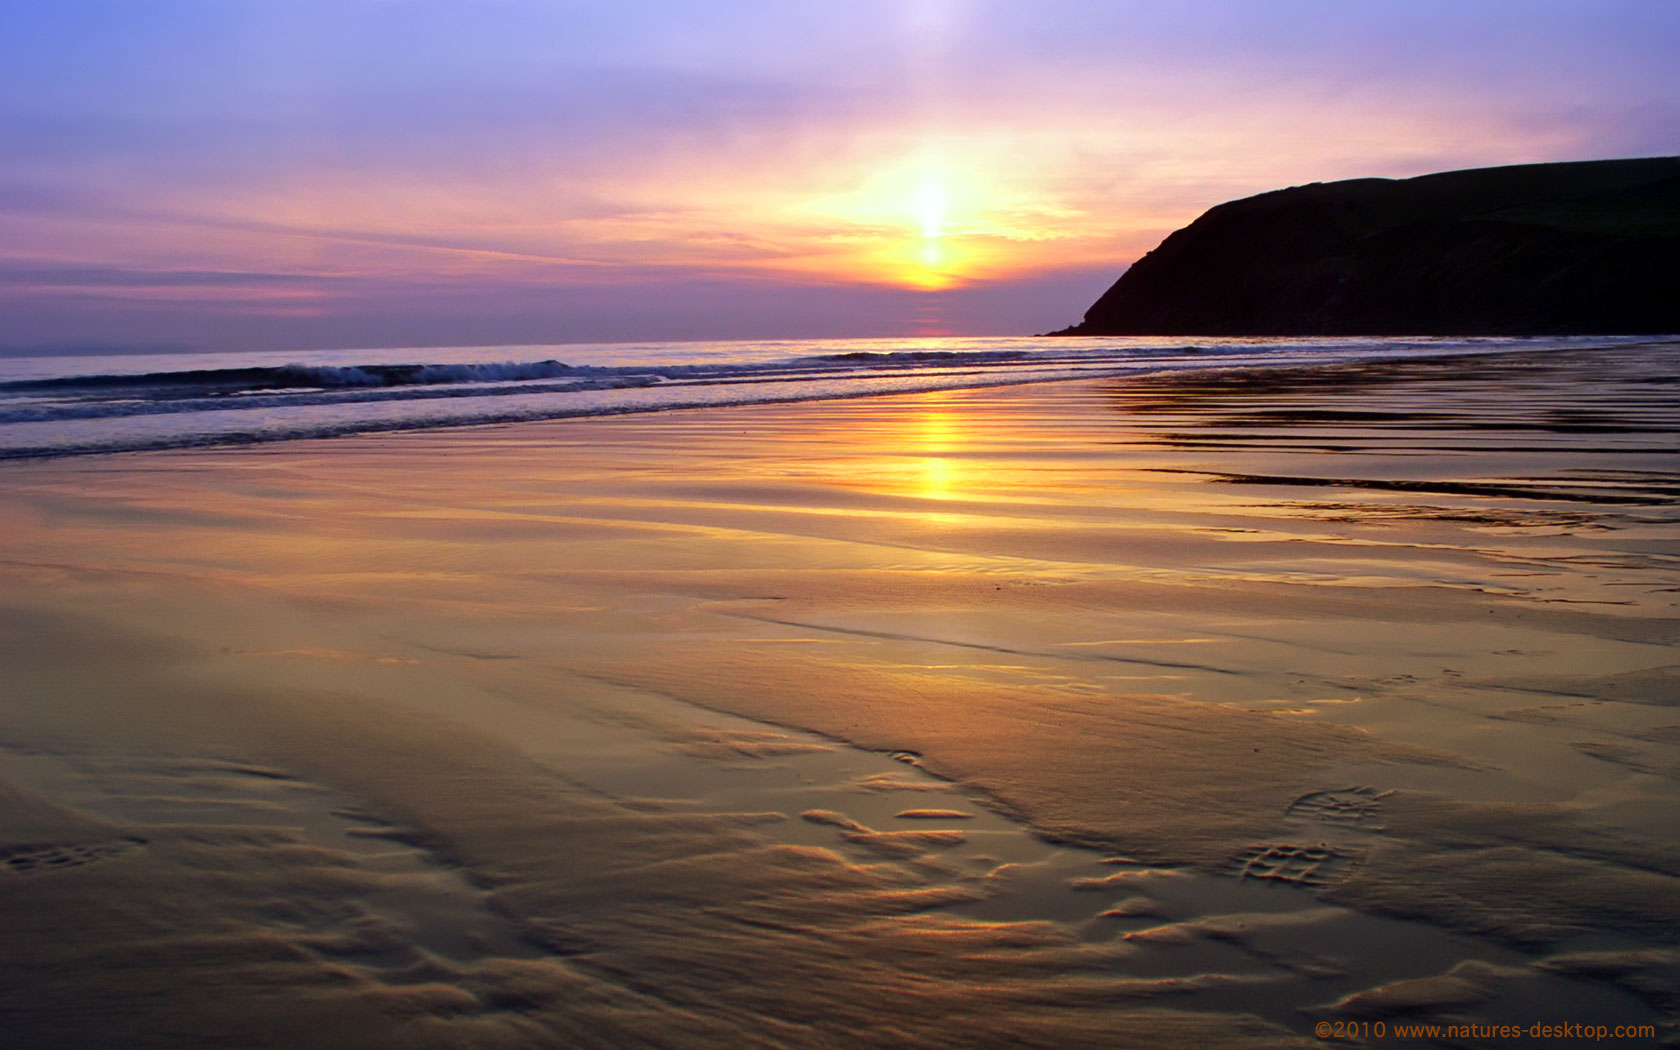 Beach Sunset Backgrounds For Desktop Wallpaper Free Best